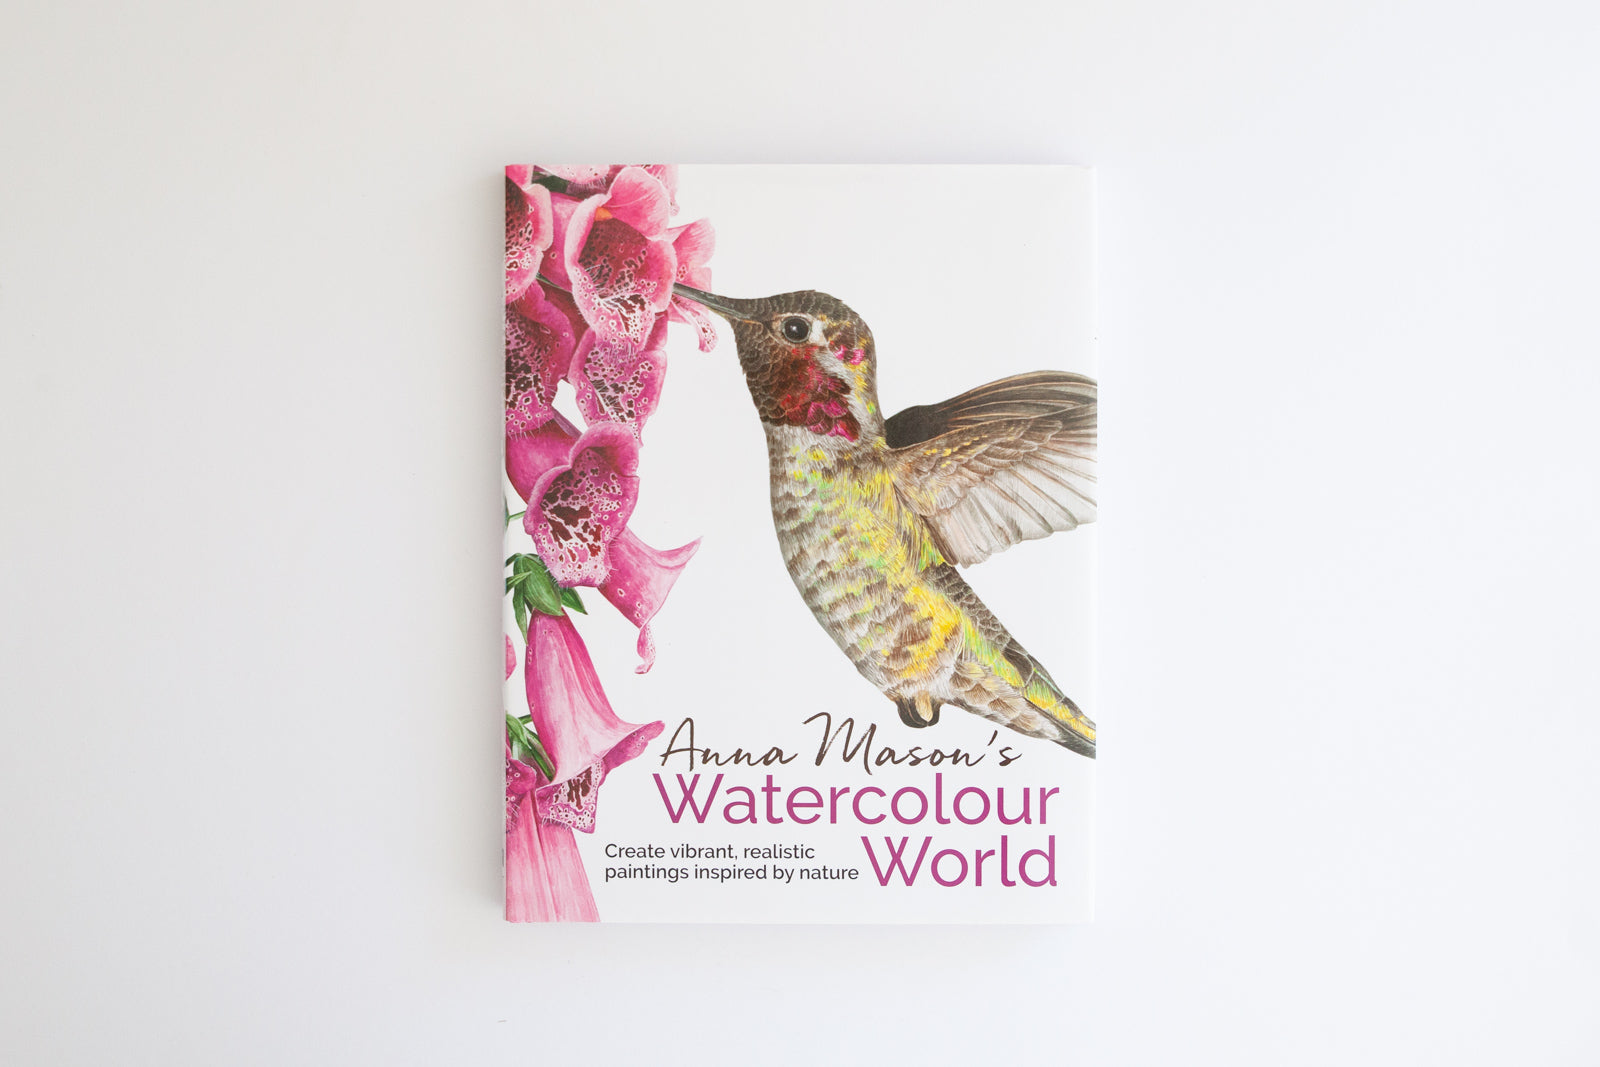 'Watercolour World' by Anna Mason